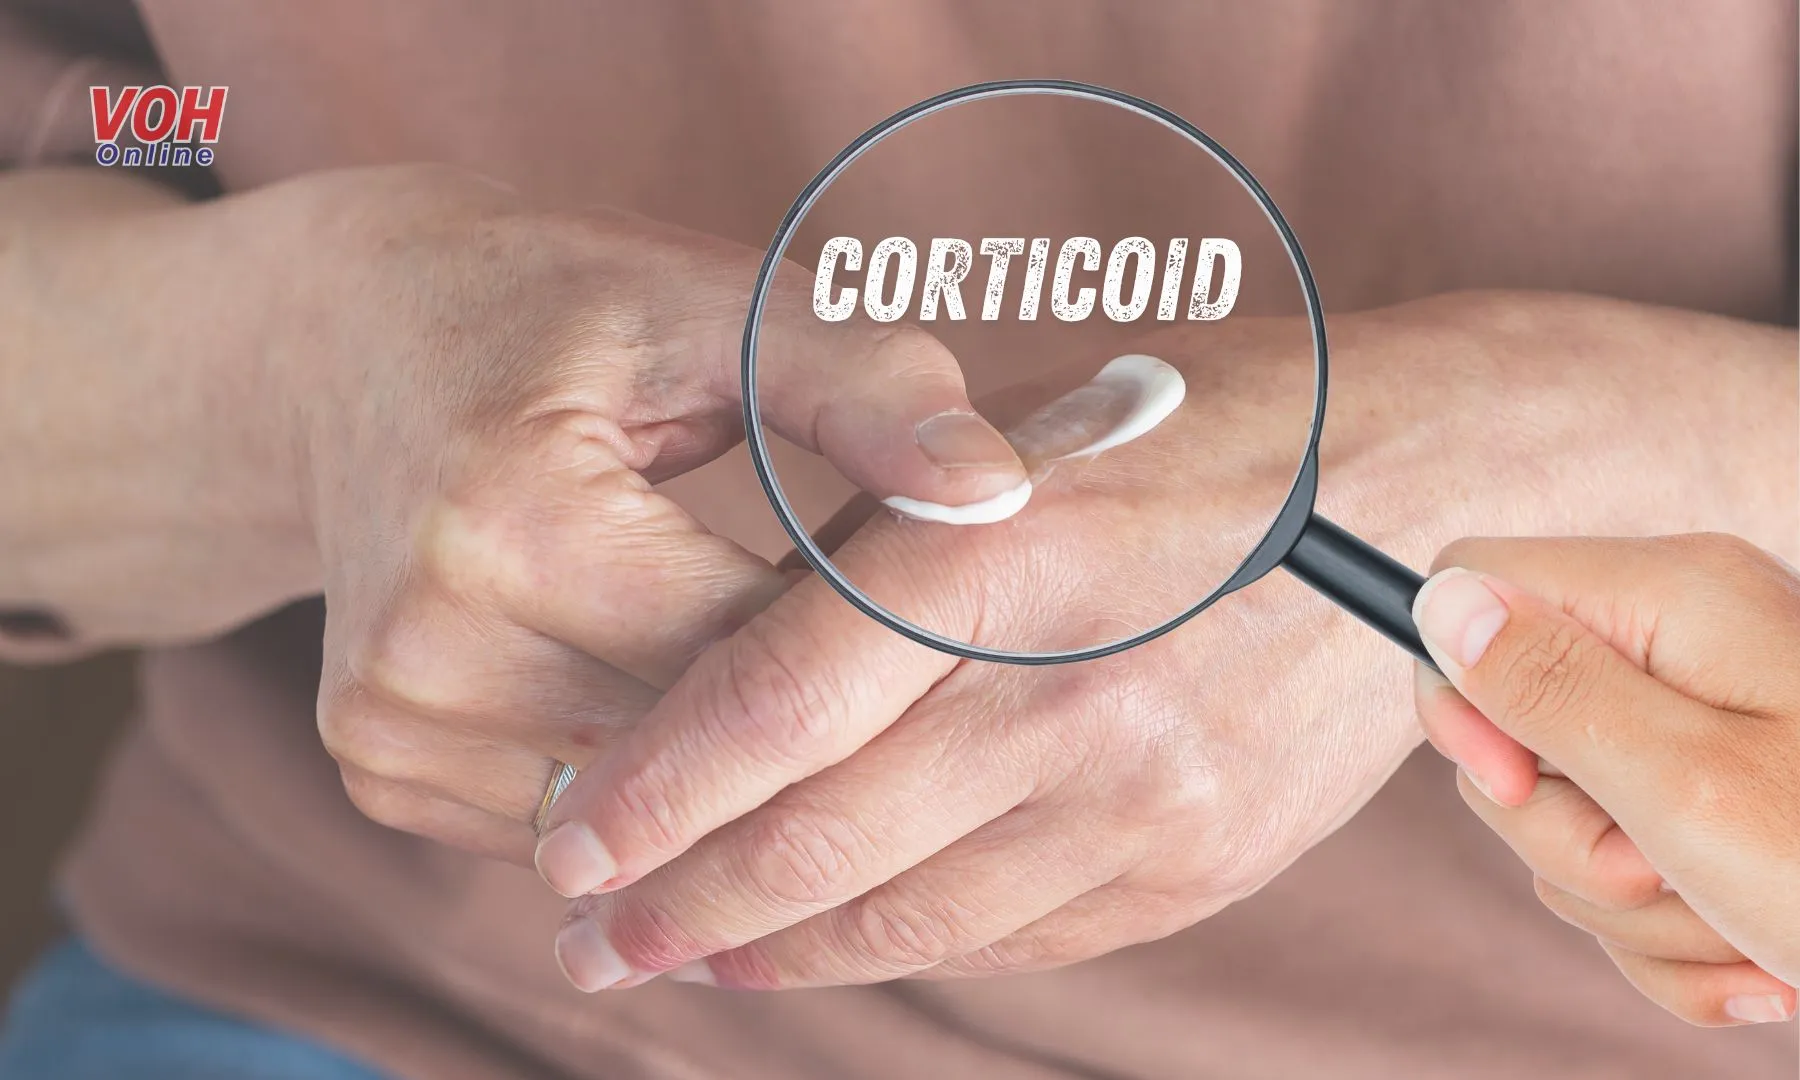 Có nên chữa bệnh nấm da bằng thuốc bôi Corticoid?